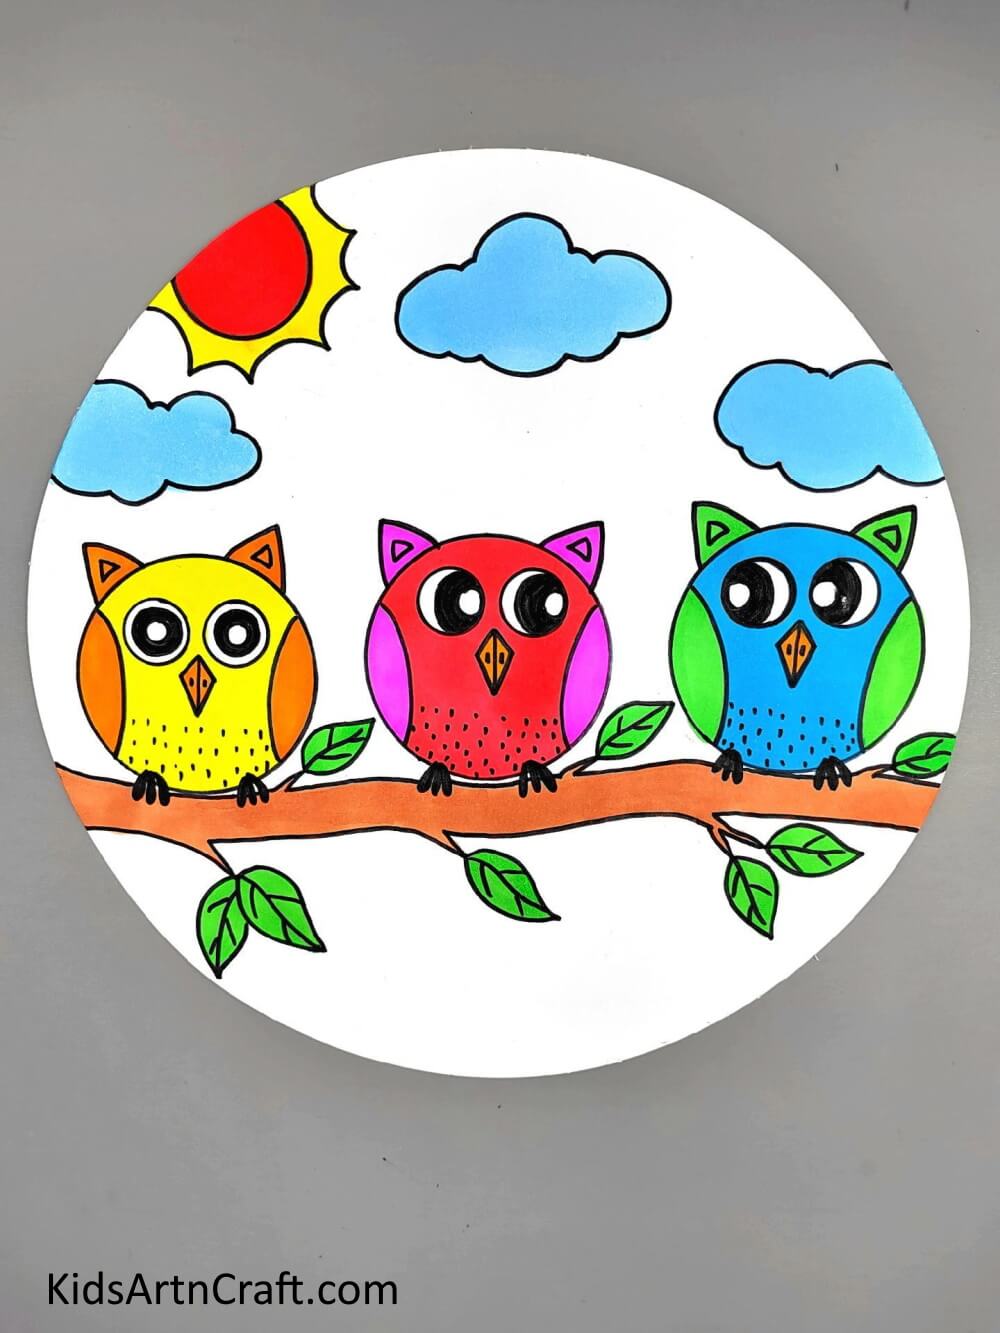 Enjoyable Group Of Owls Drawing for the Kiddos